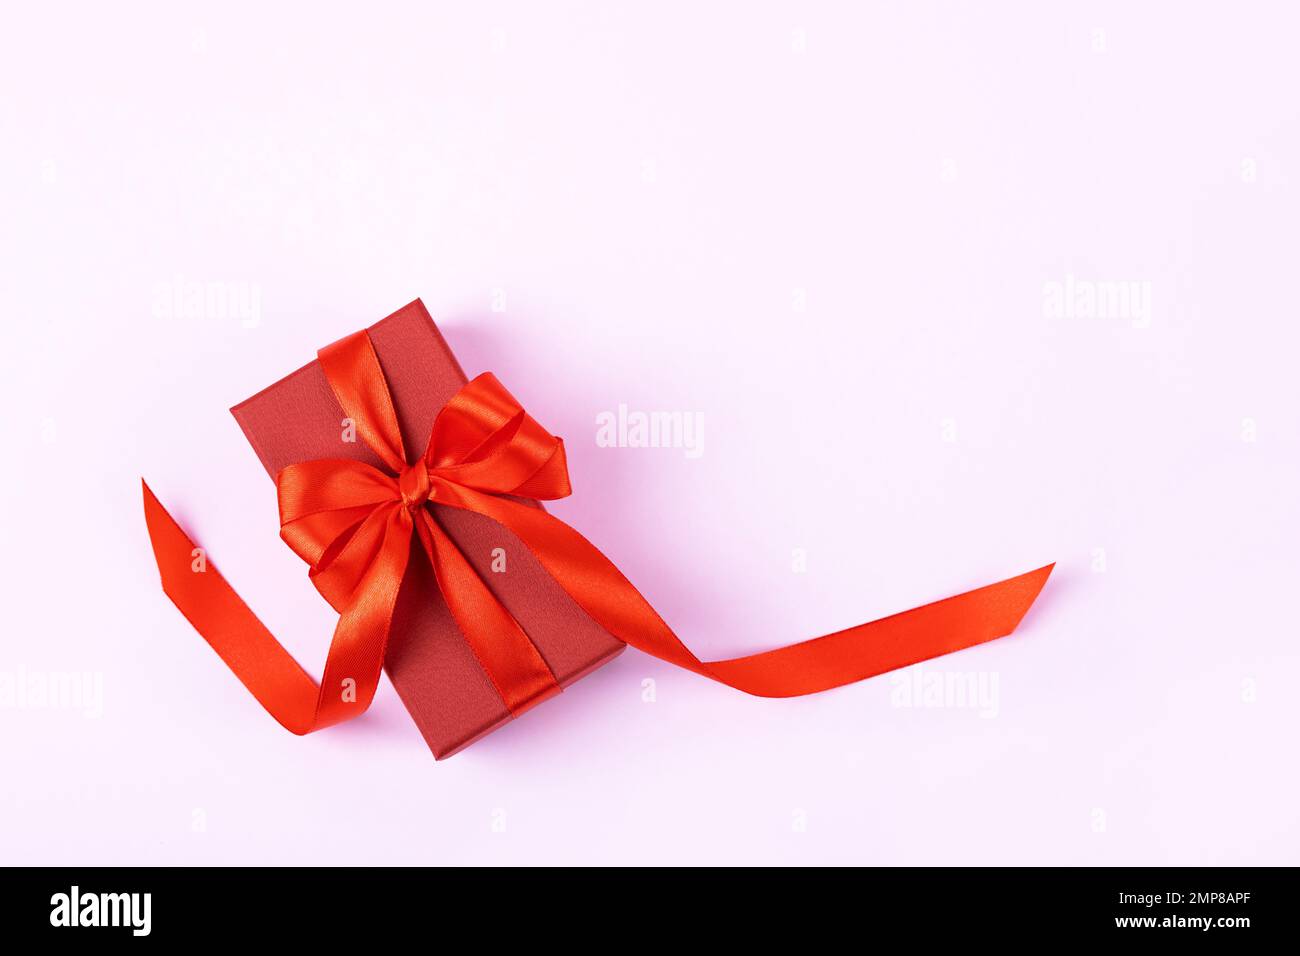 Rote Geschenkbox mit roter Schleife aus Satin auf lila Hintergrund. Grußkarte zum Valentinstag, Muttertag und Geburtstag. Stockfoto